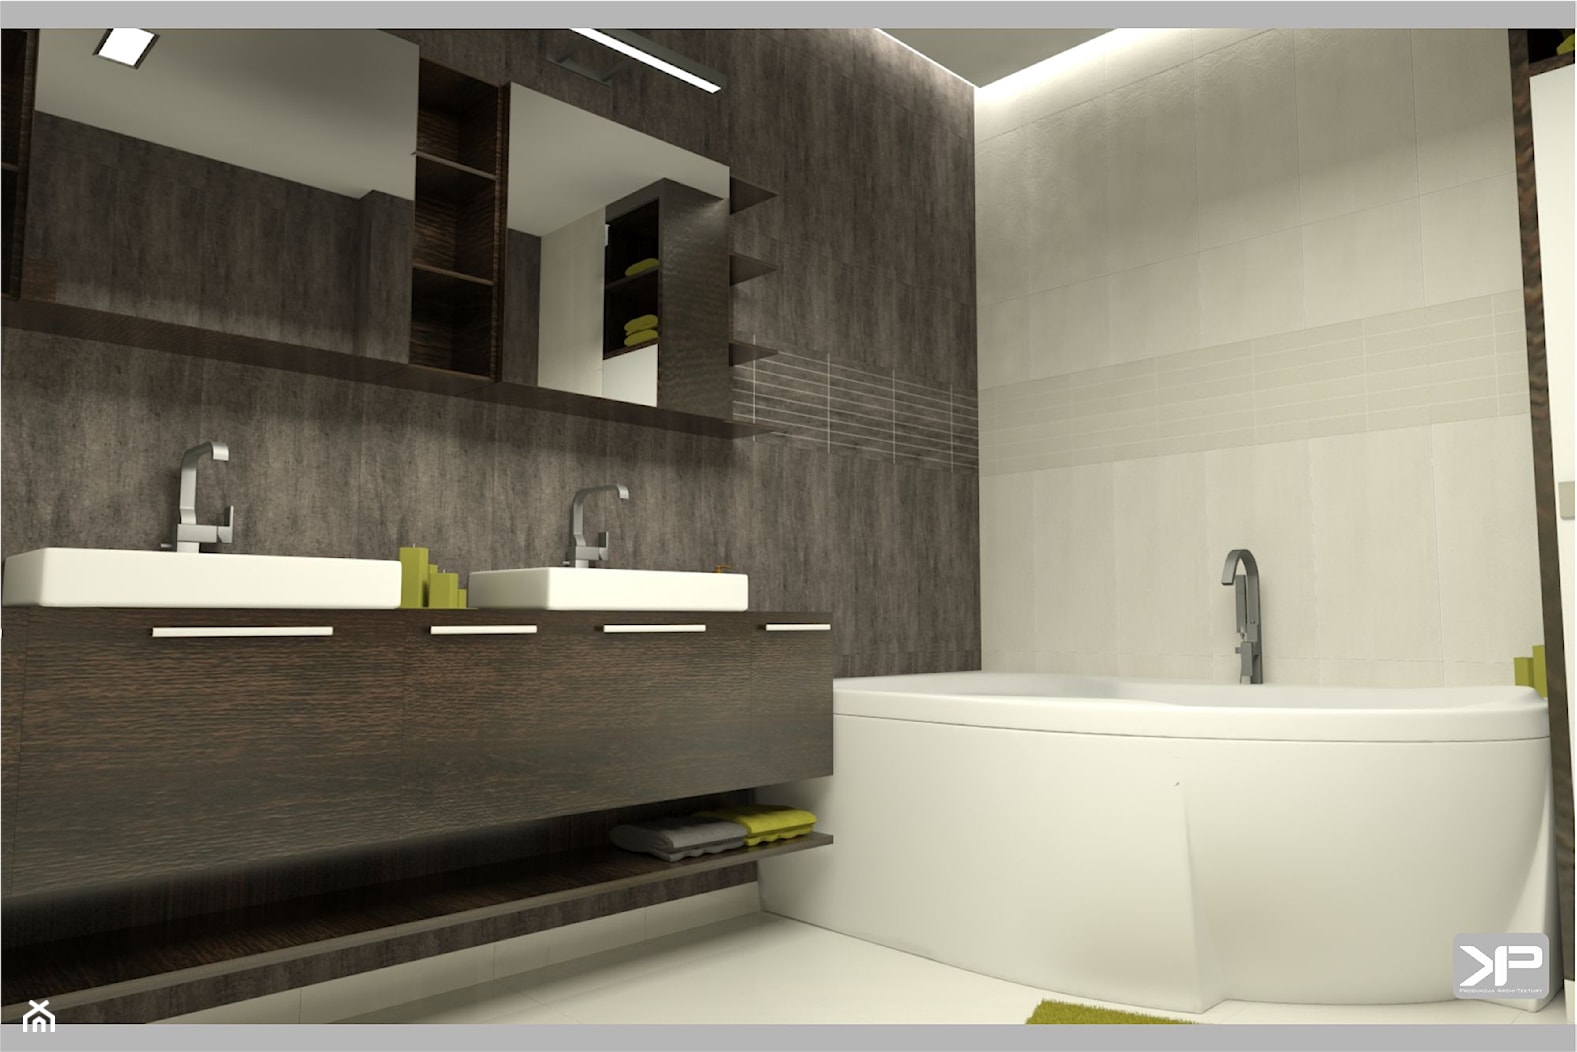 Łazienka wystrój nowoczesna w kolorach biel, brąz, szary, beż - zdjęcie od KP Produkcja Archi-Tektury - Homebook